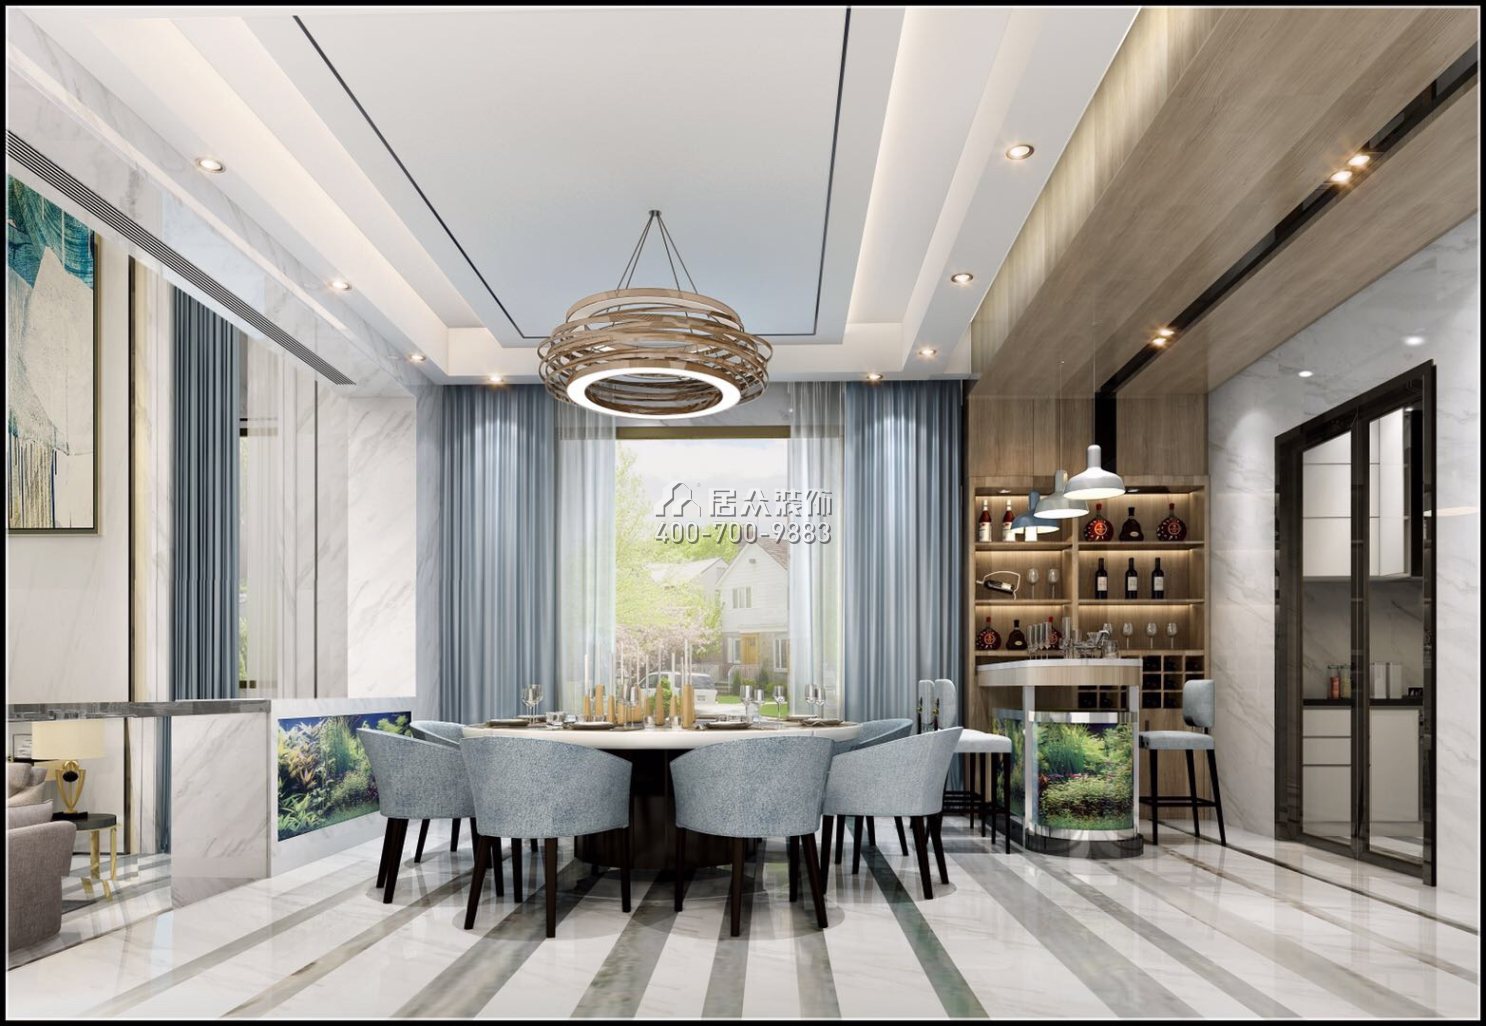 觀園700平方米現代簡約風格別墅戶型餐廳裝修效果圖